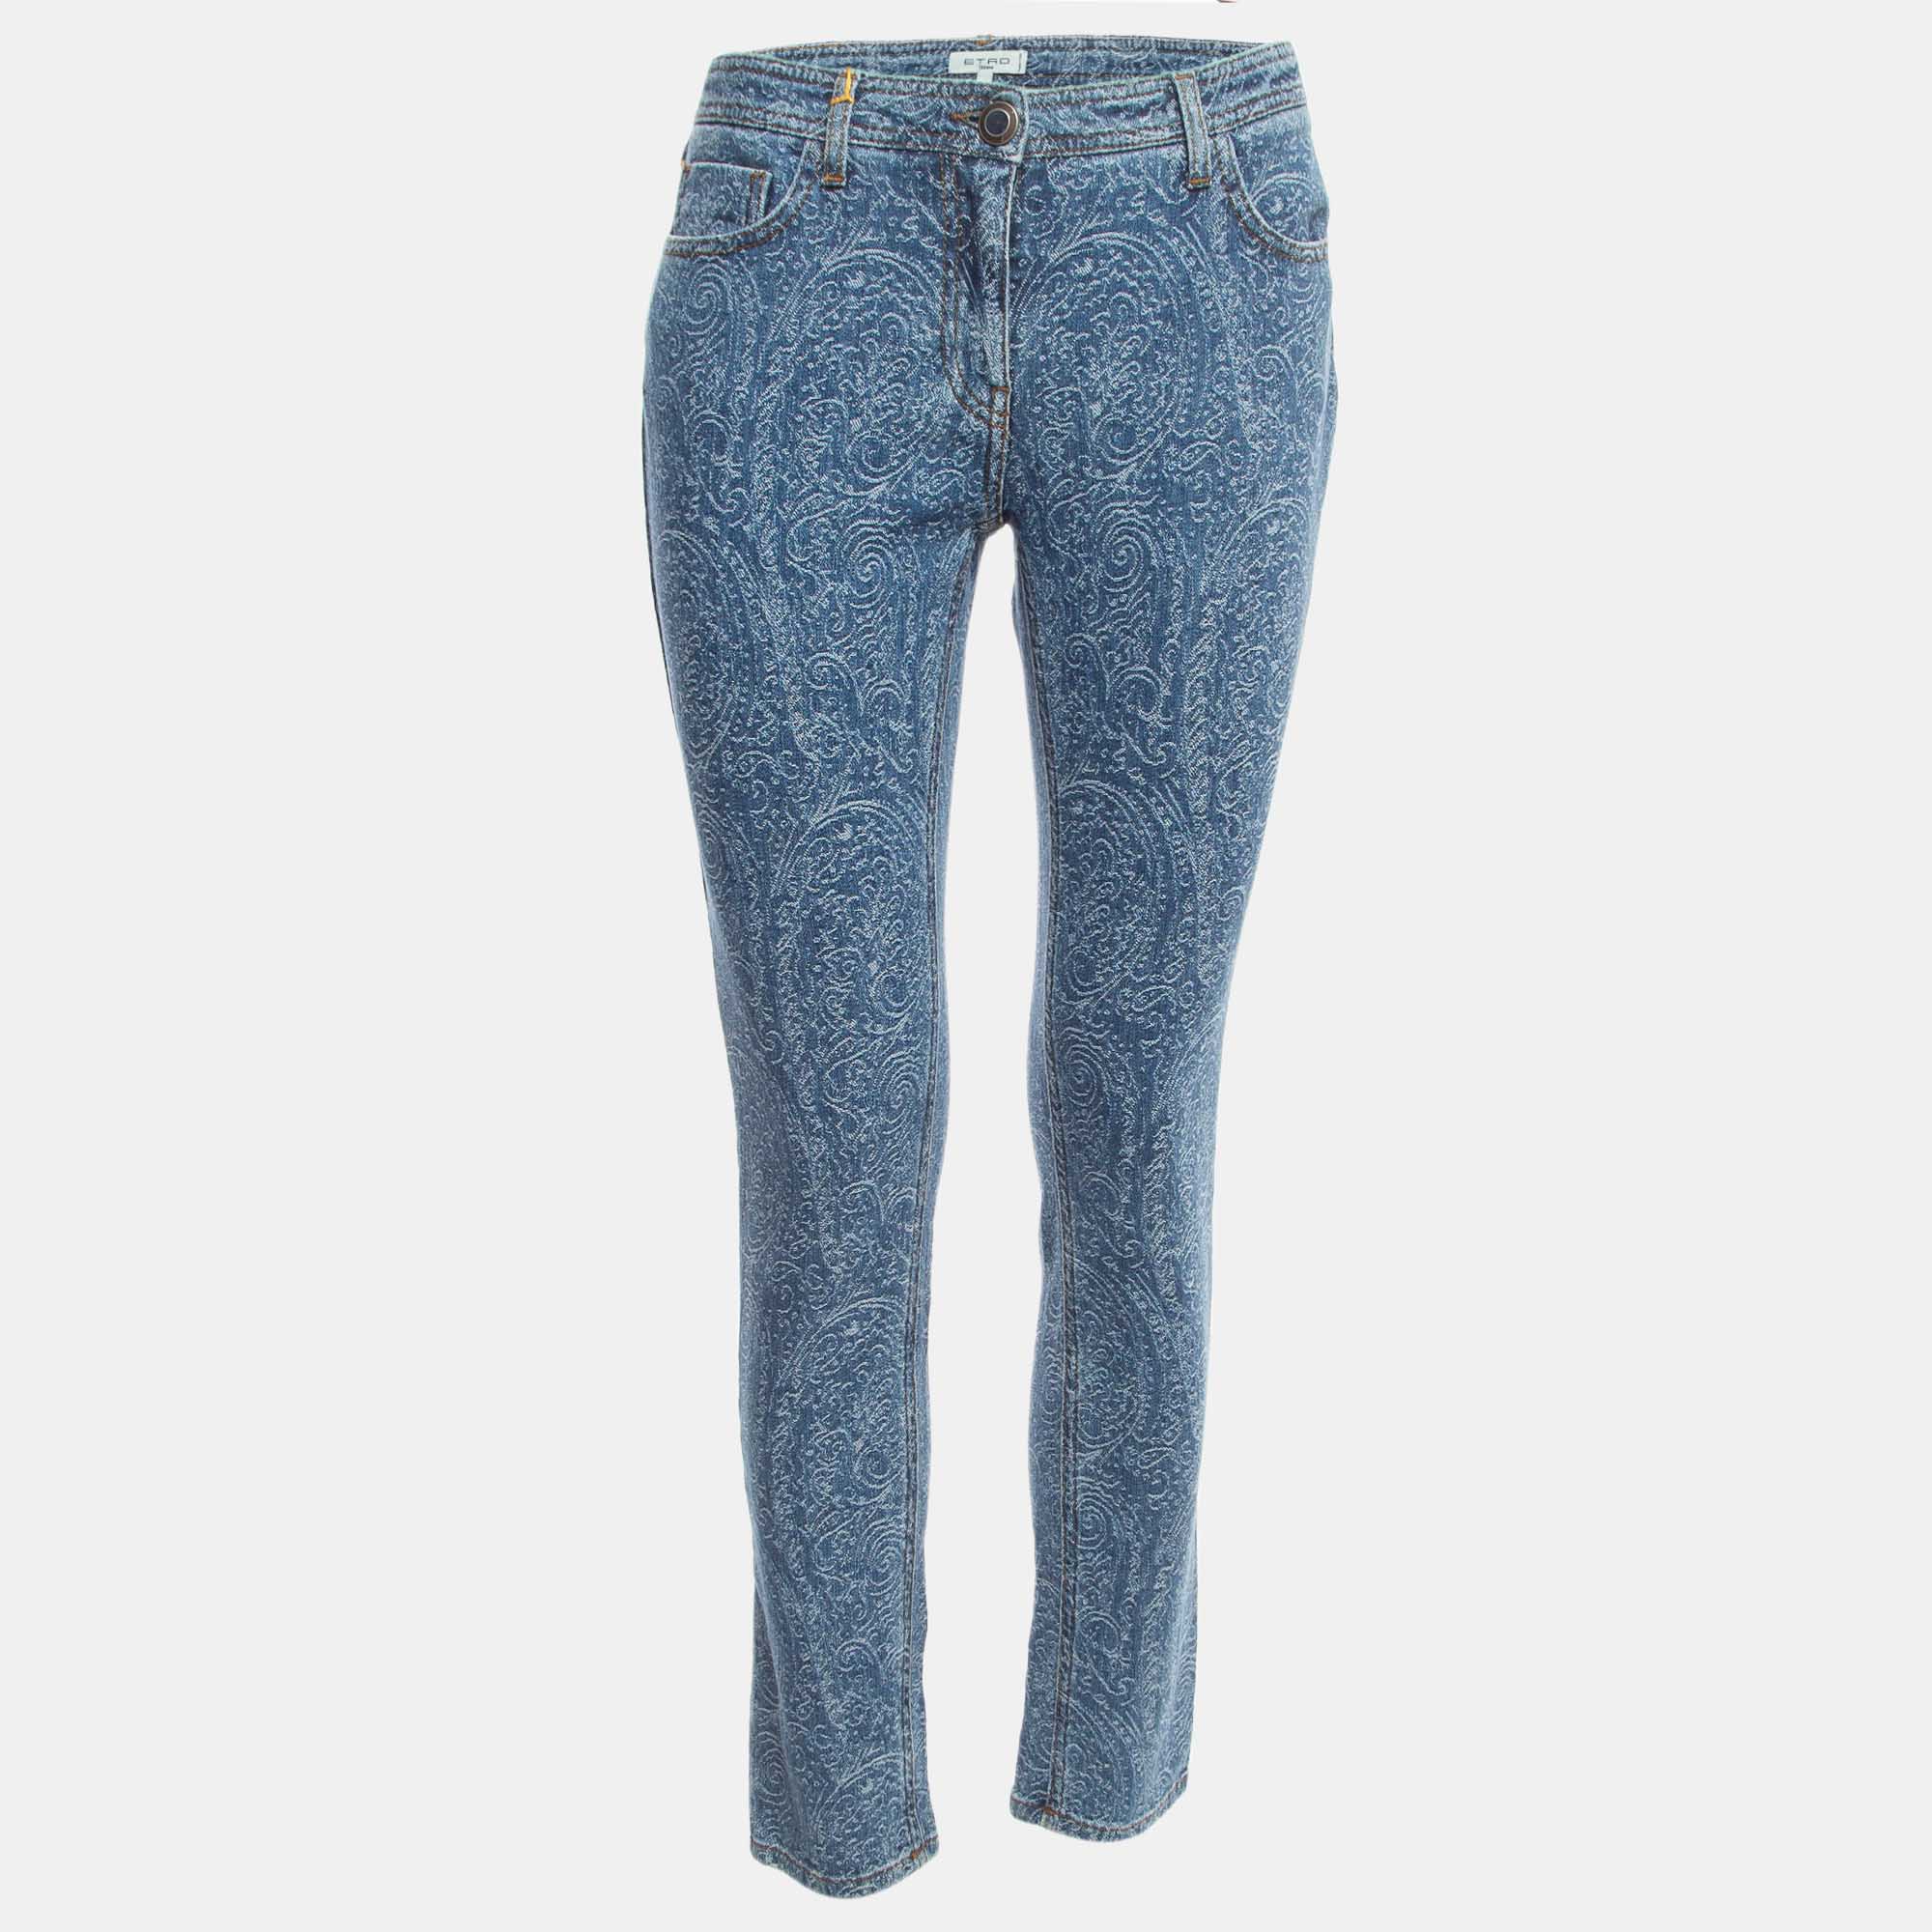 Etro Blue Paisley Jacquard Denim Jeans L Waist 31